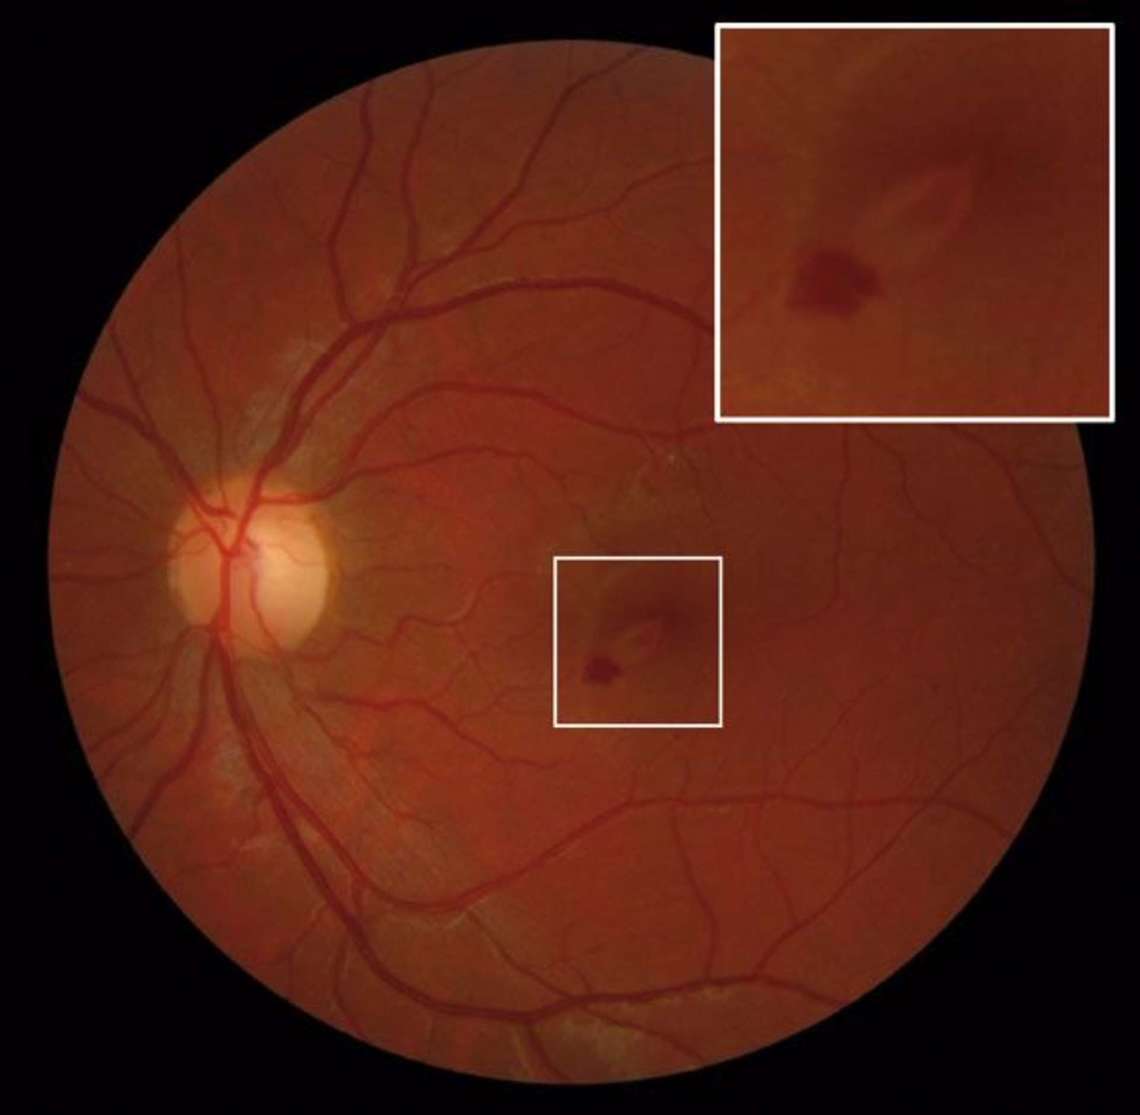 Figure 1. Rétinophotographie initiale de l’œil gauche montrant une&nbsp;lésion jauneorangé arrondie périfovéolaire inférieure et une hémorragie prérétinienne périlésionnelle
